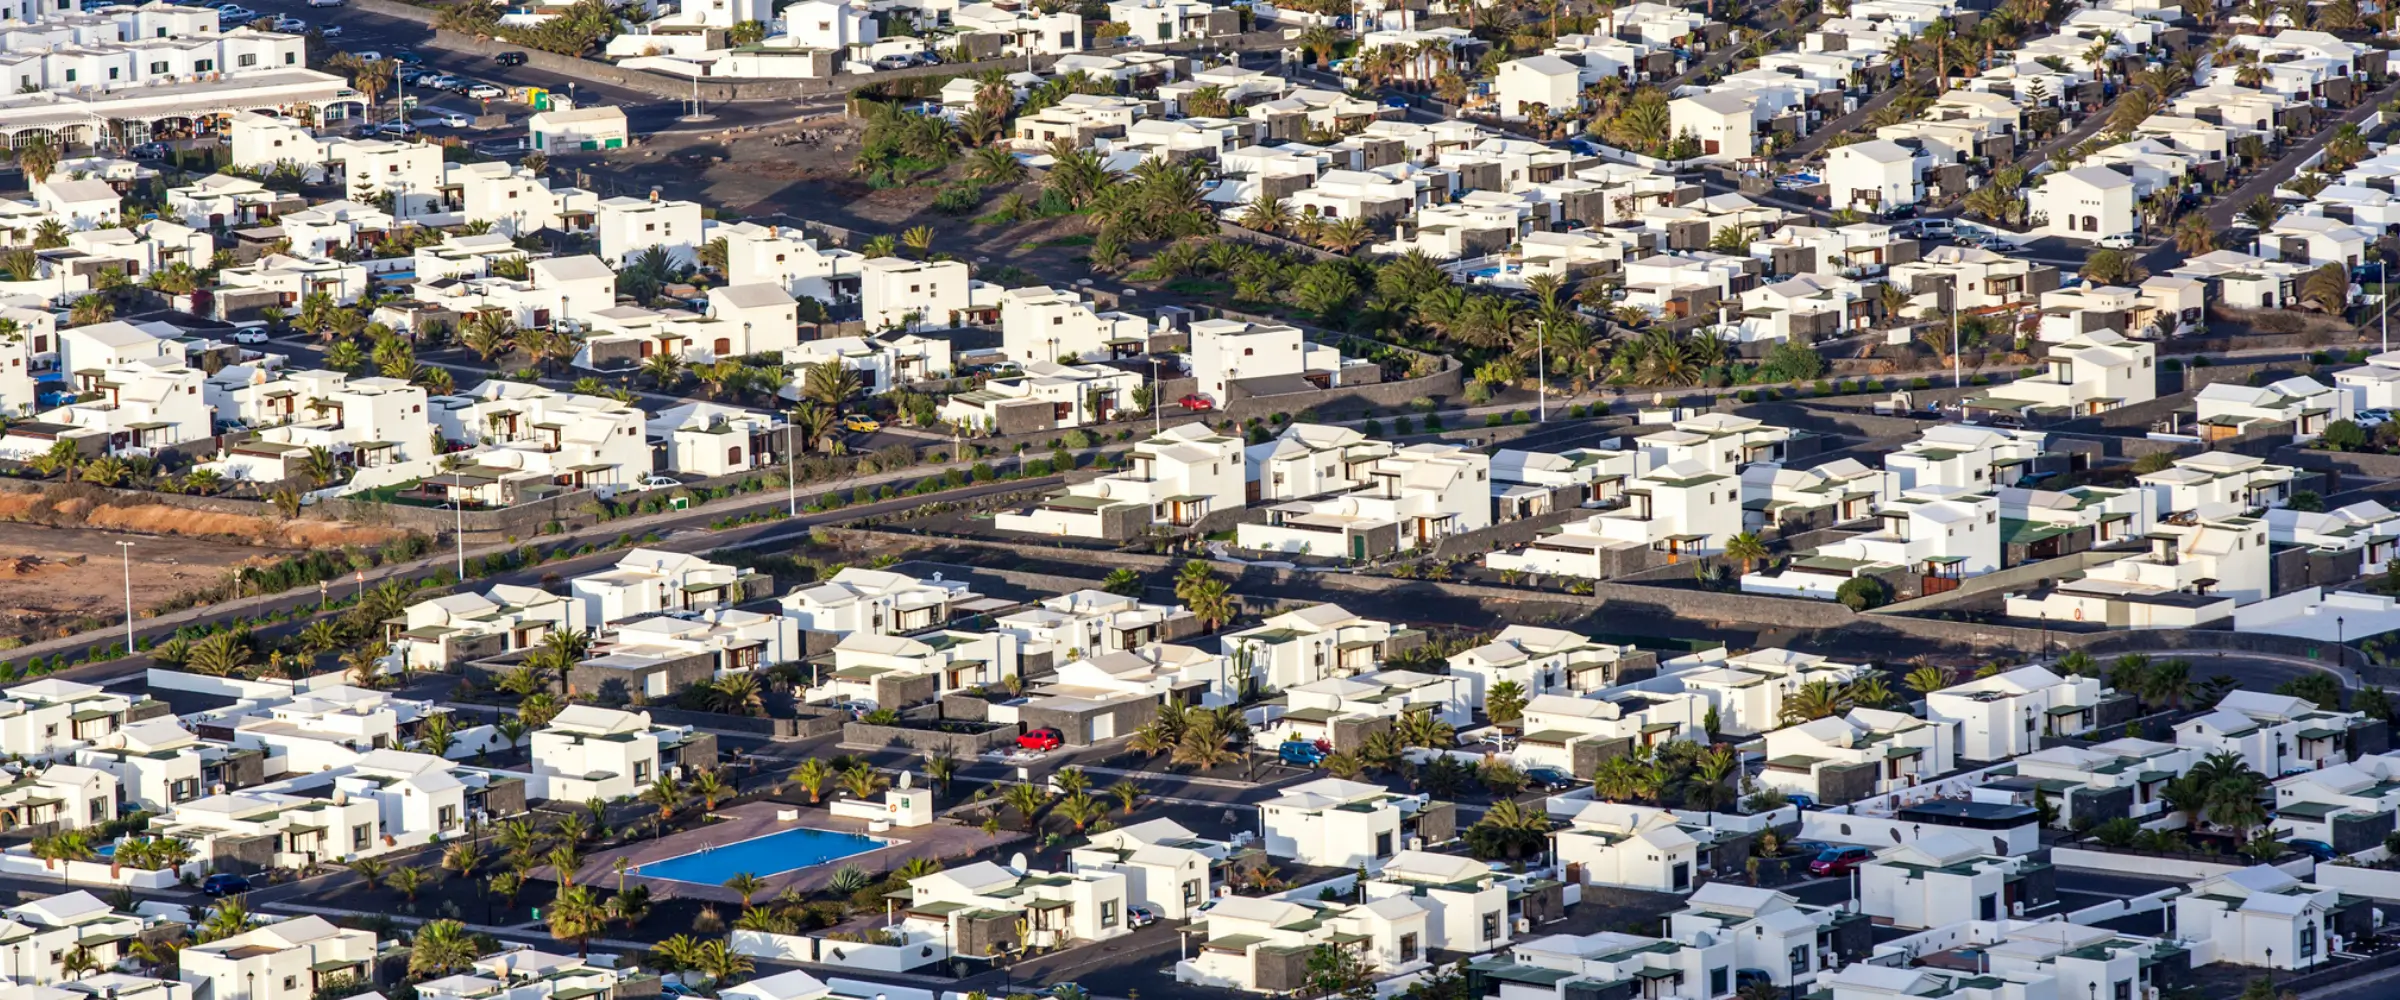 housing scheme in lahore